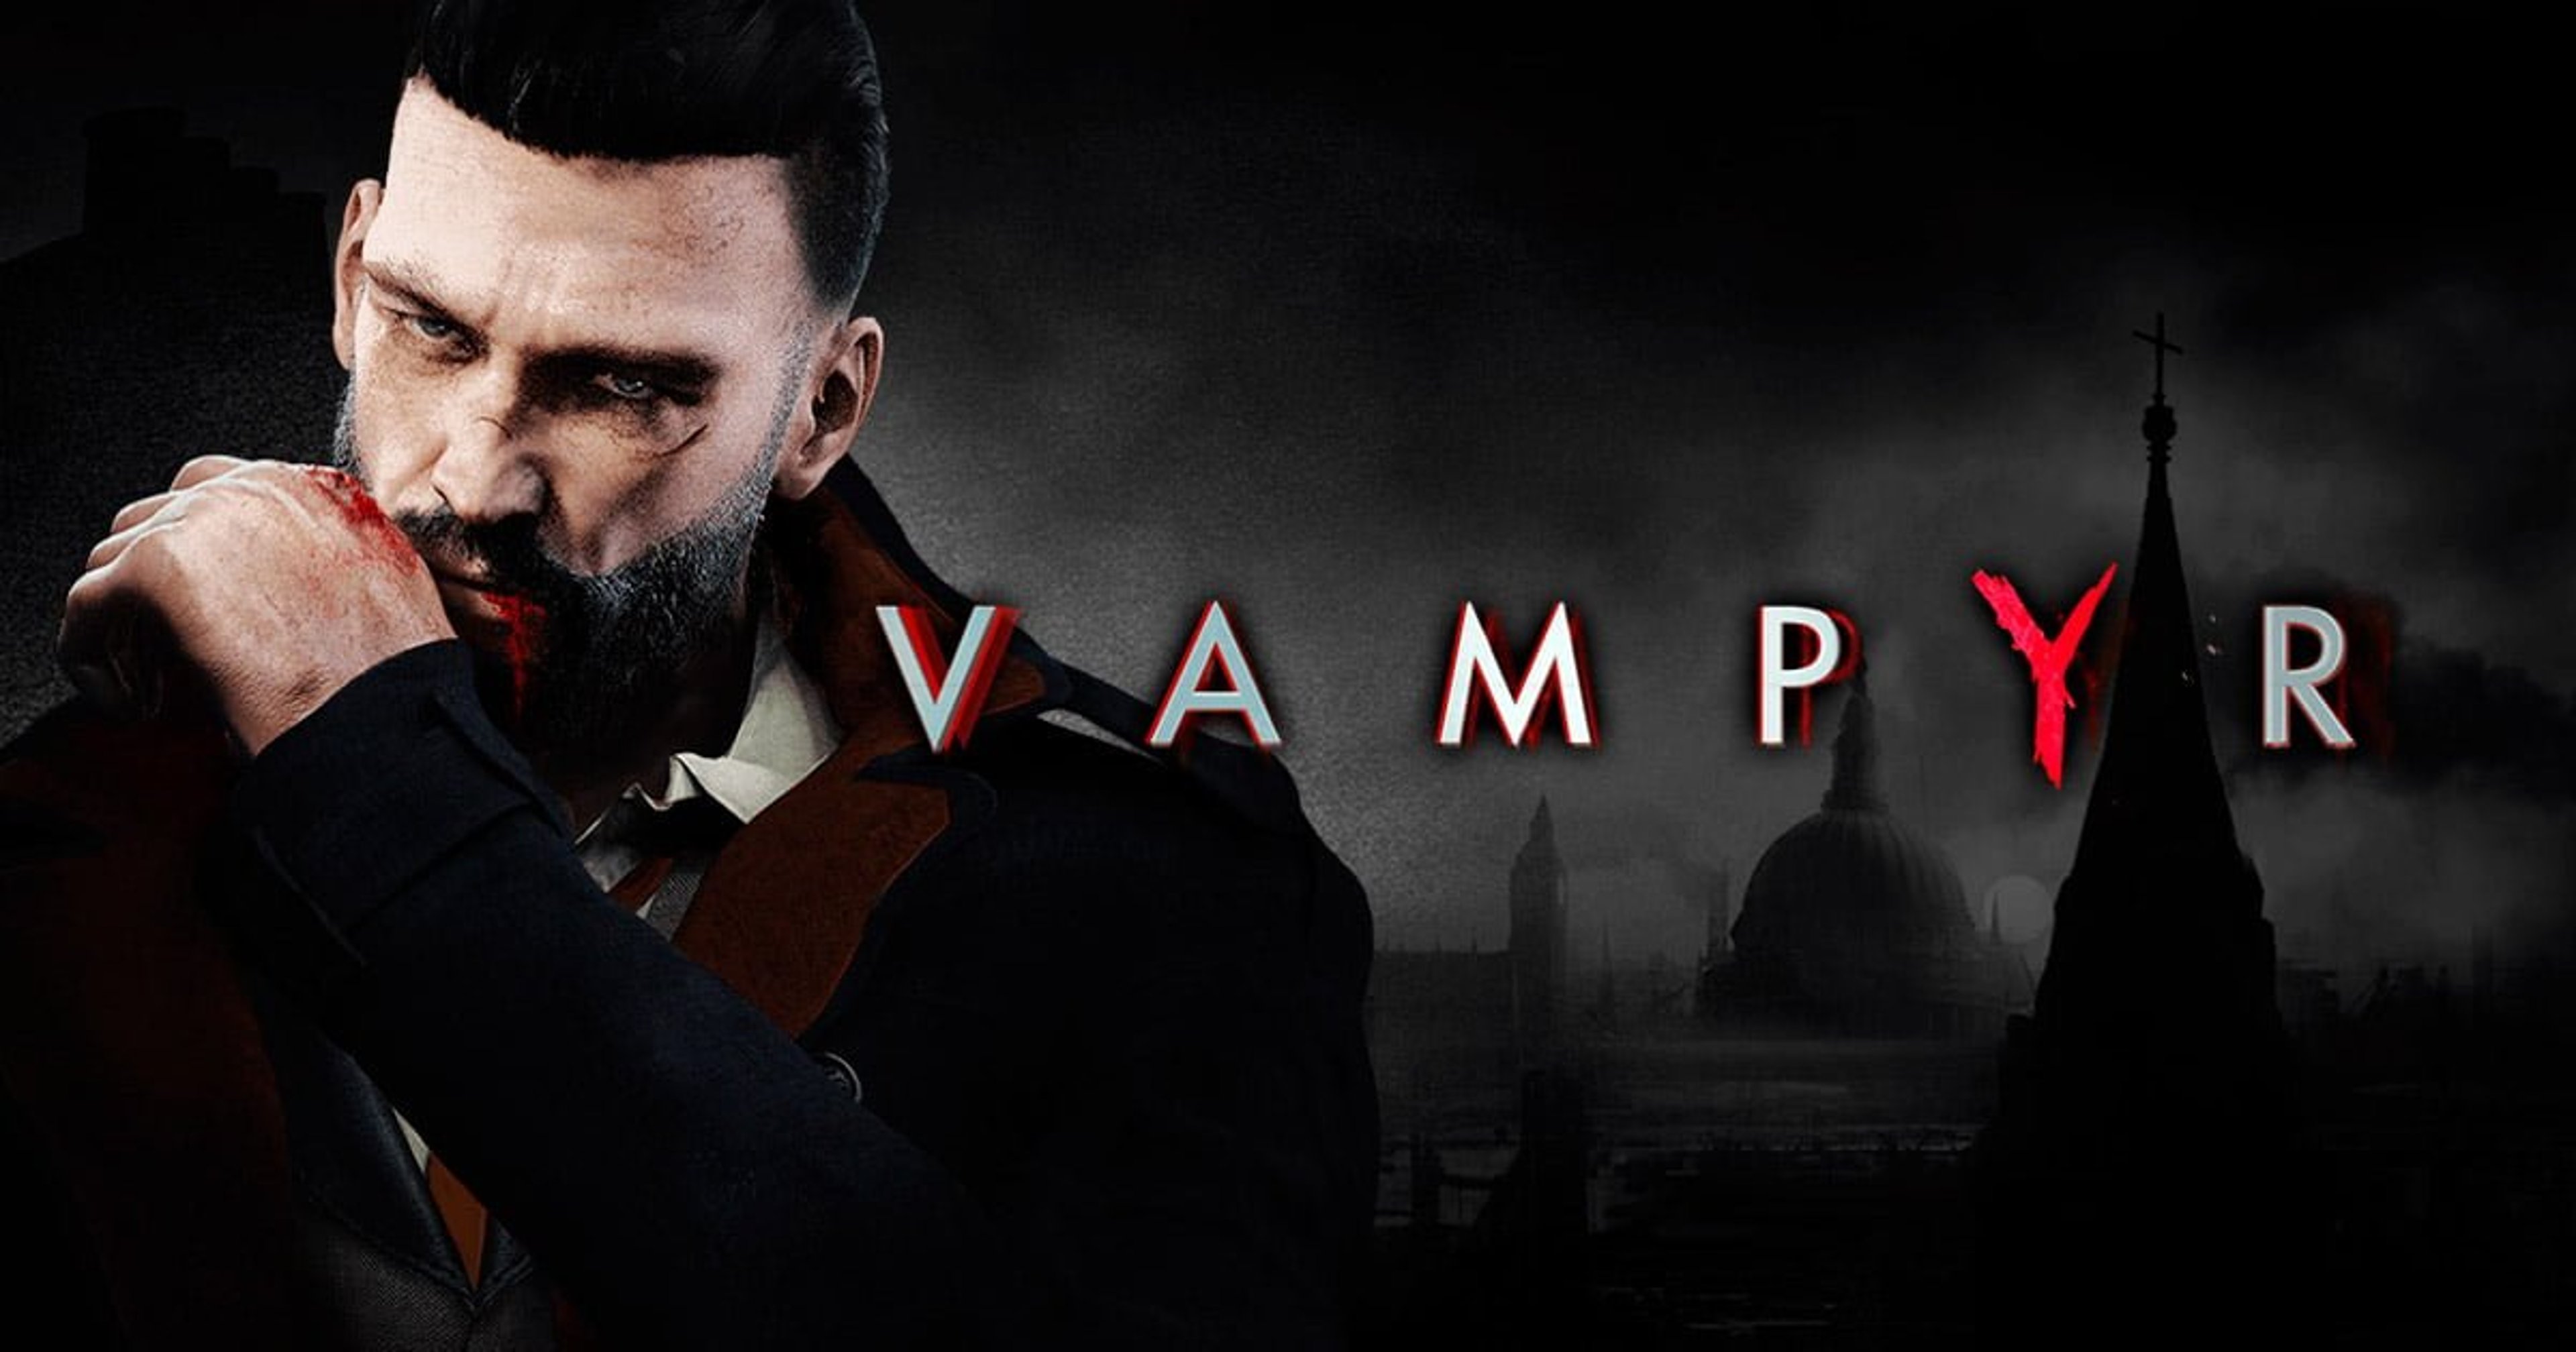 Vampyr, presto disponibile per Nintendo Switch Cover